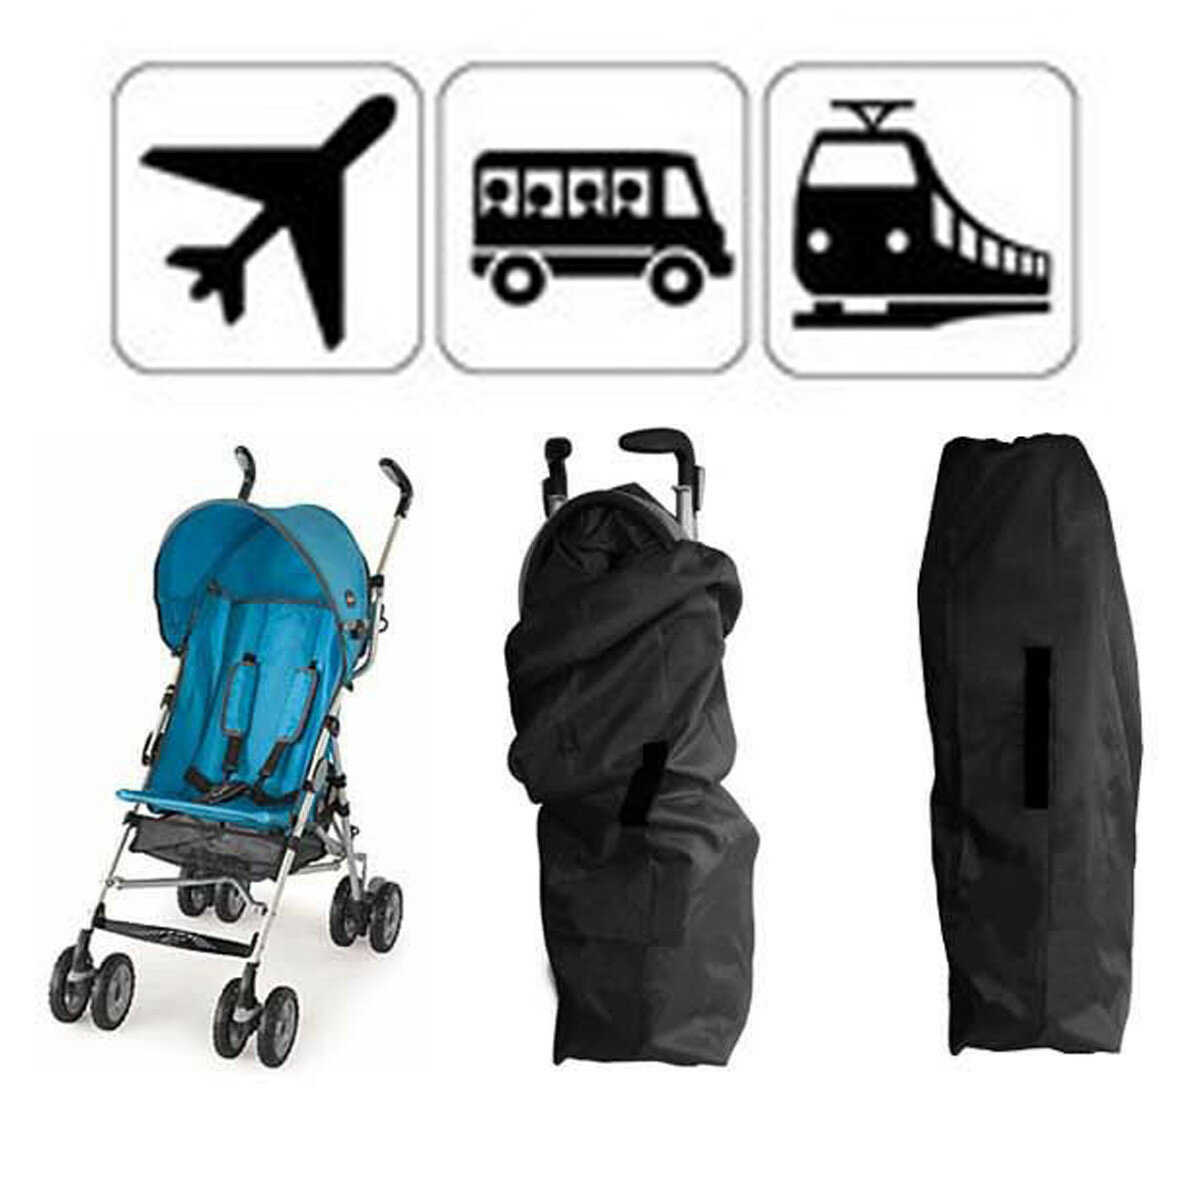 bag for stroller